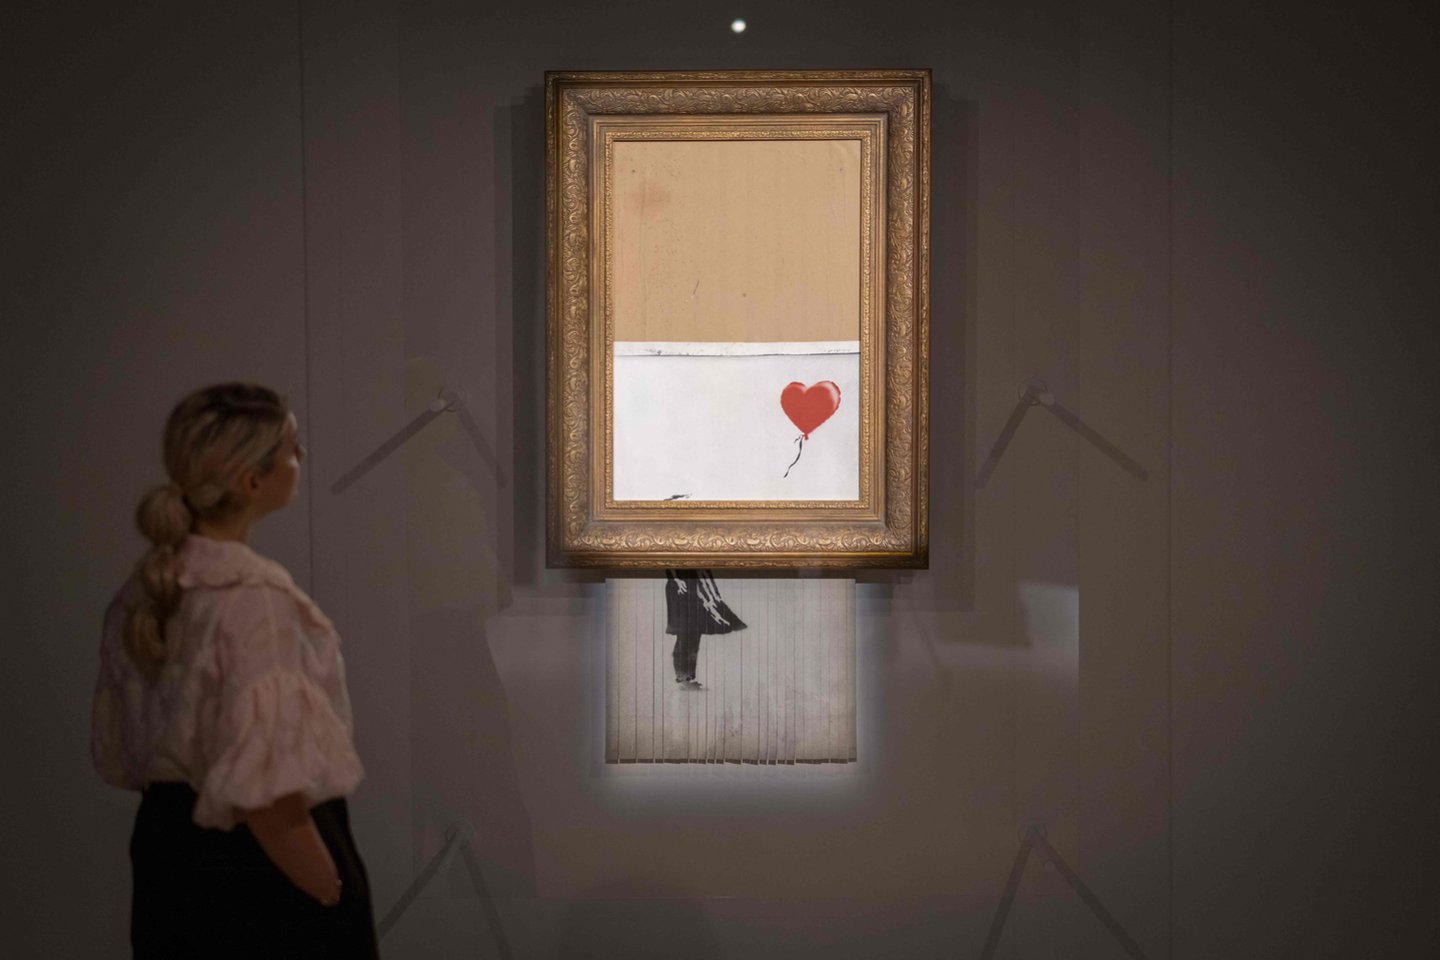  Iš dalies supjaustytas Banksy piešinys parduotas aukcione už beveik 22 mln. eurų.<br>Scanpix/AFP nuotr.